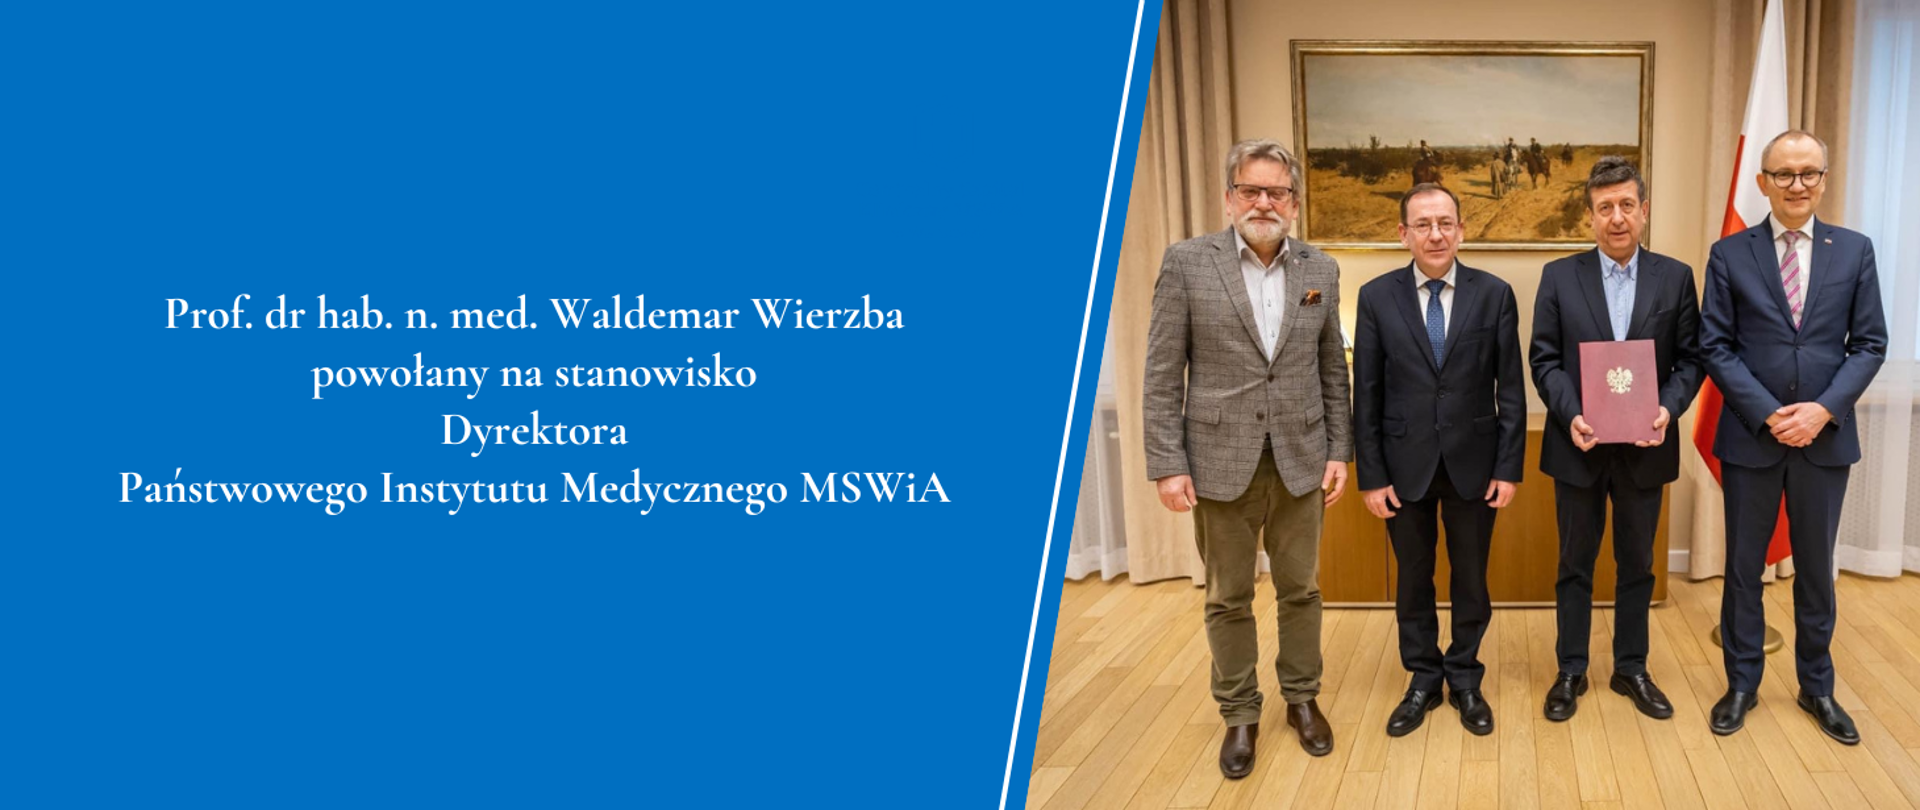 Prof. dr hab. n. med. Waldemar Wierzba powołany na stanowisko Dyrektora Państwowego Instytutu Medycznego MSWiA
